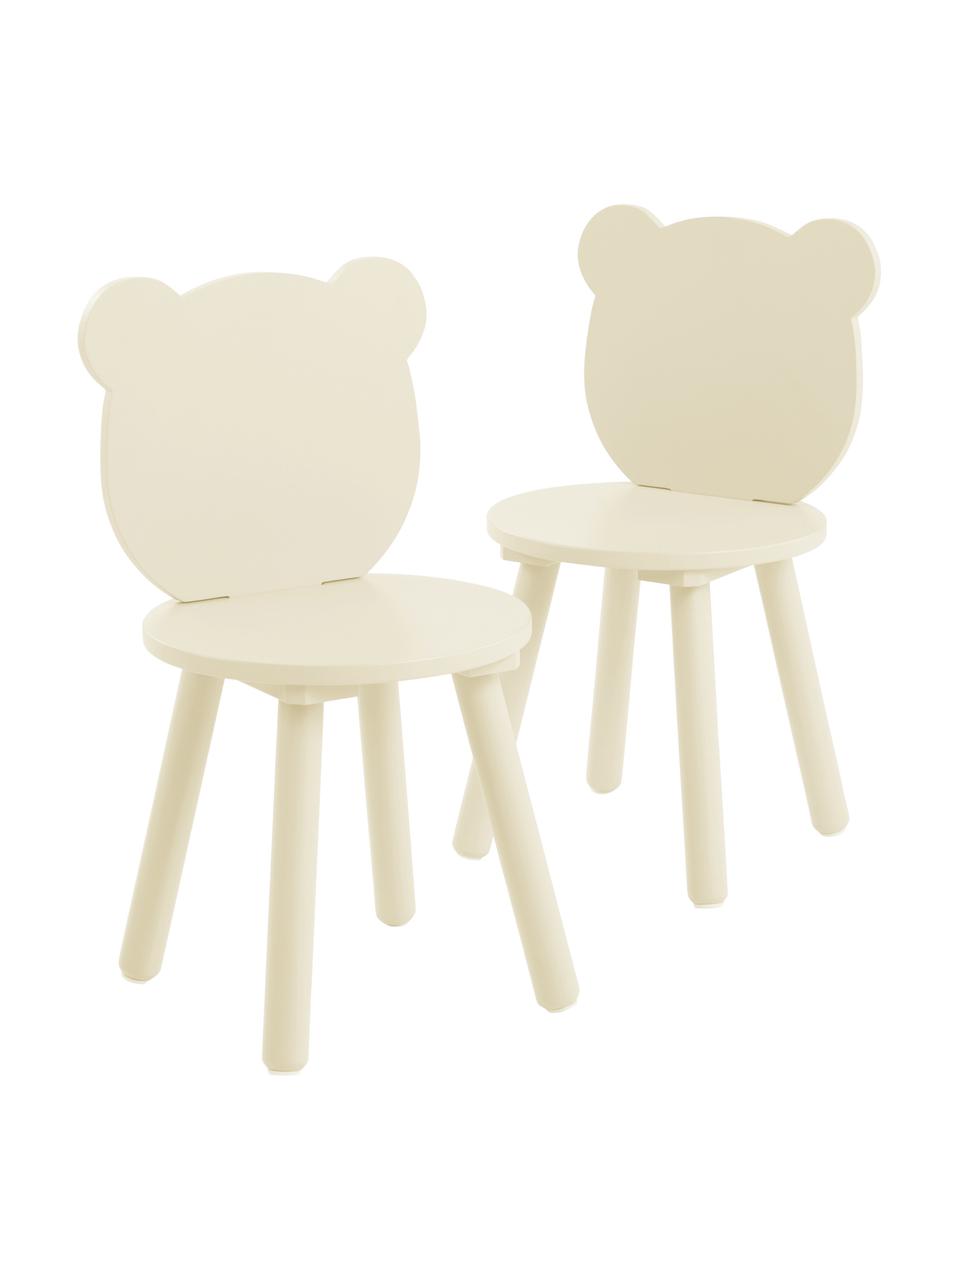 Sedia per bambini in legno giallo Beary 2 pz, Legno di pino, pannello di fibra a media densità (MDF) laccato, Giallo, Larg. 30 x Alt. 58 cm